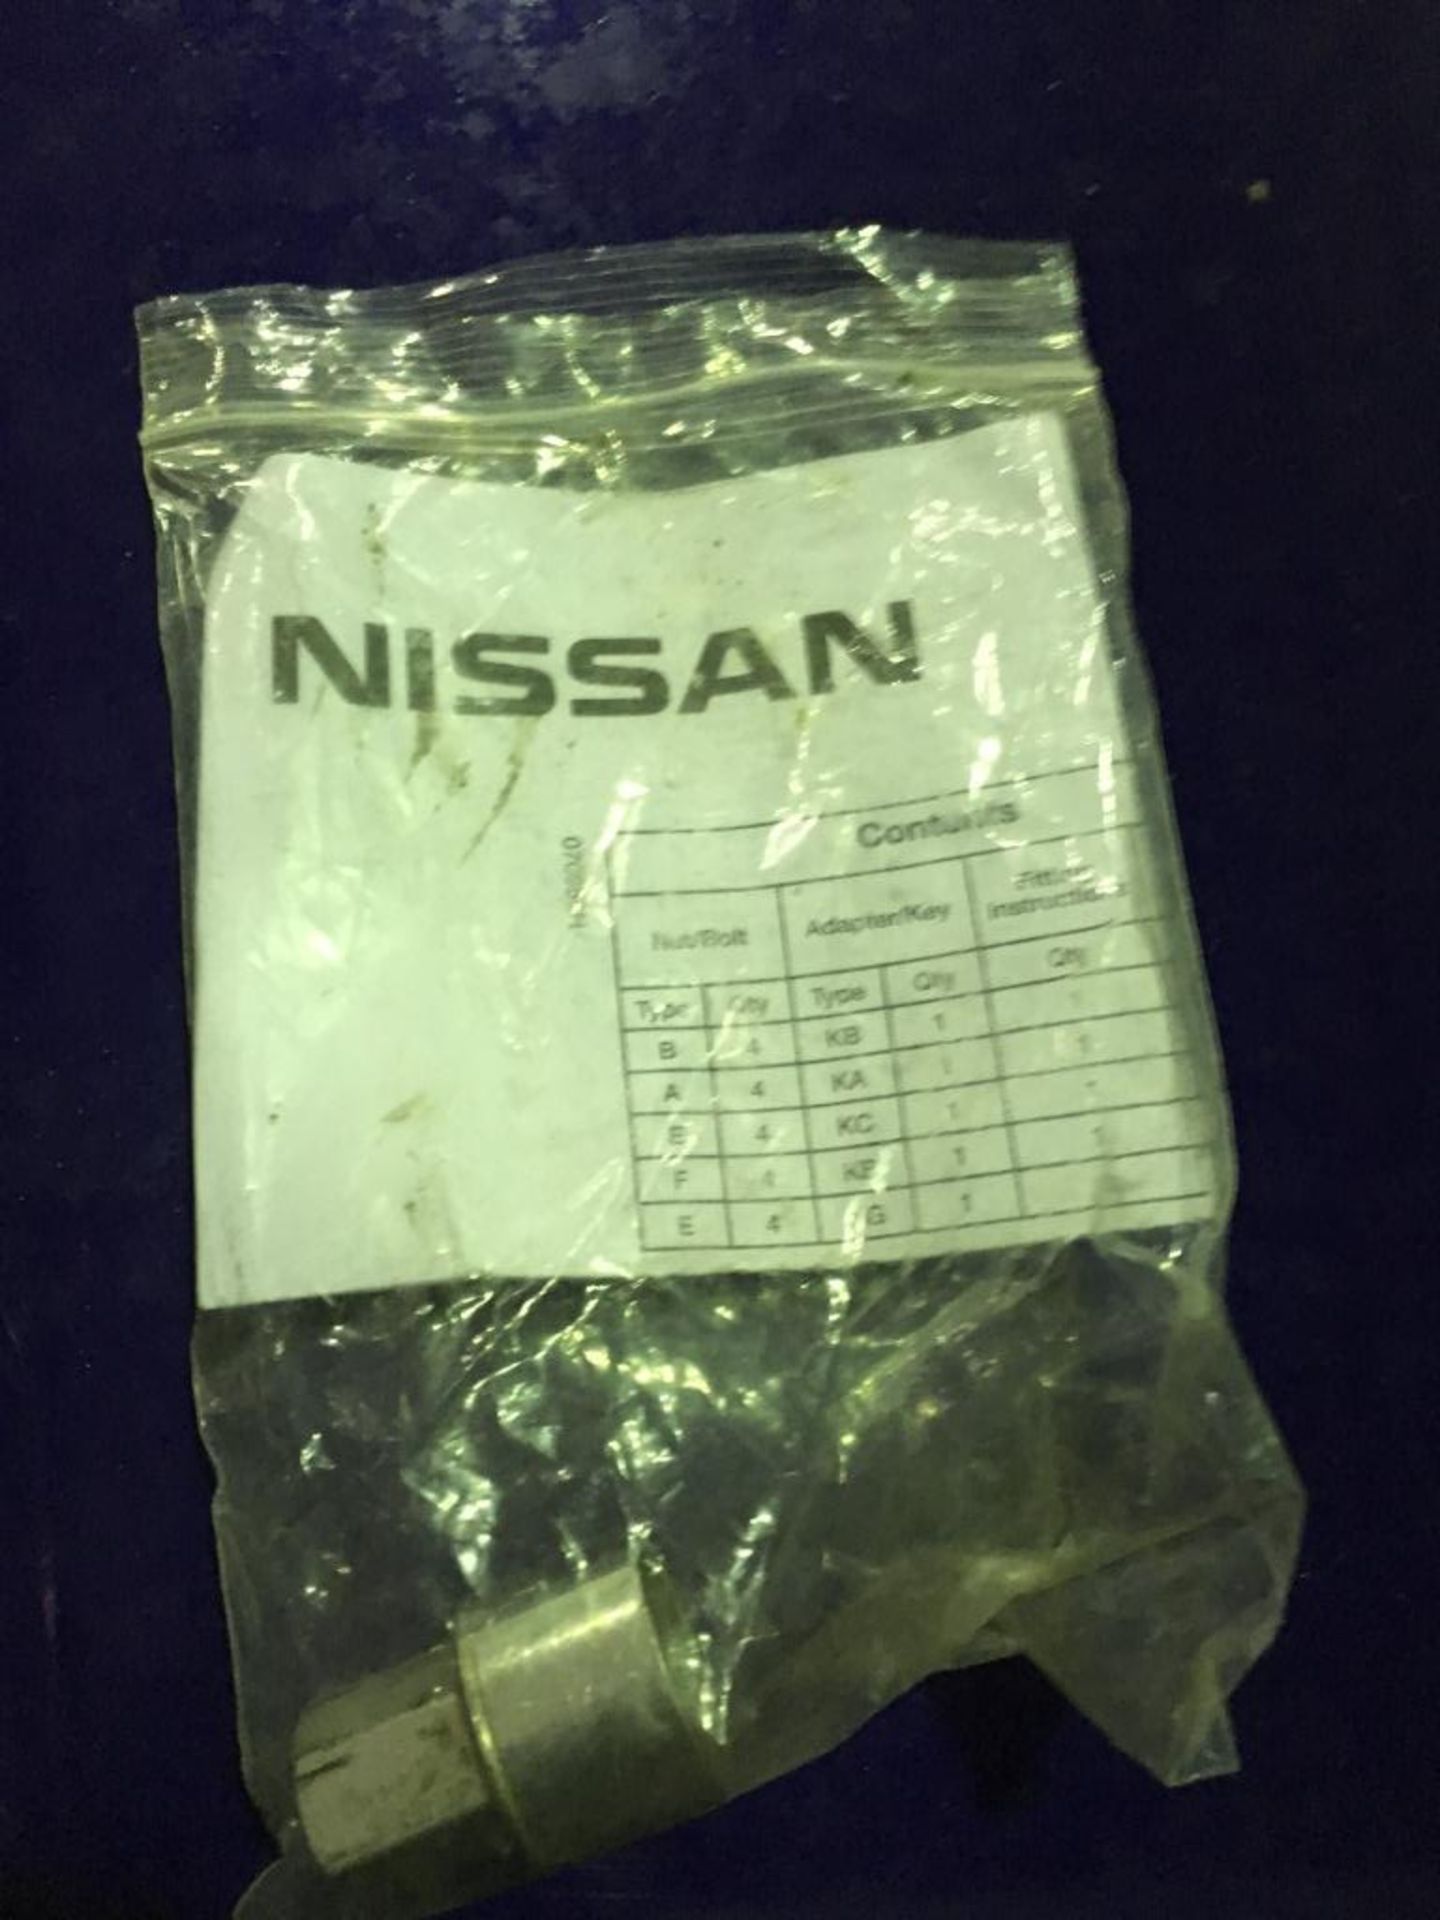 Nissan Qashqai Tekna DCI 5 door hatchback diesel car, Registration number J1 BEK, Date of - Image 25 of 30